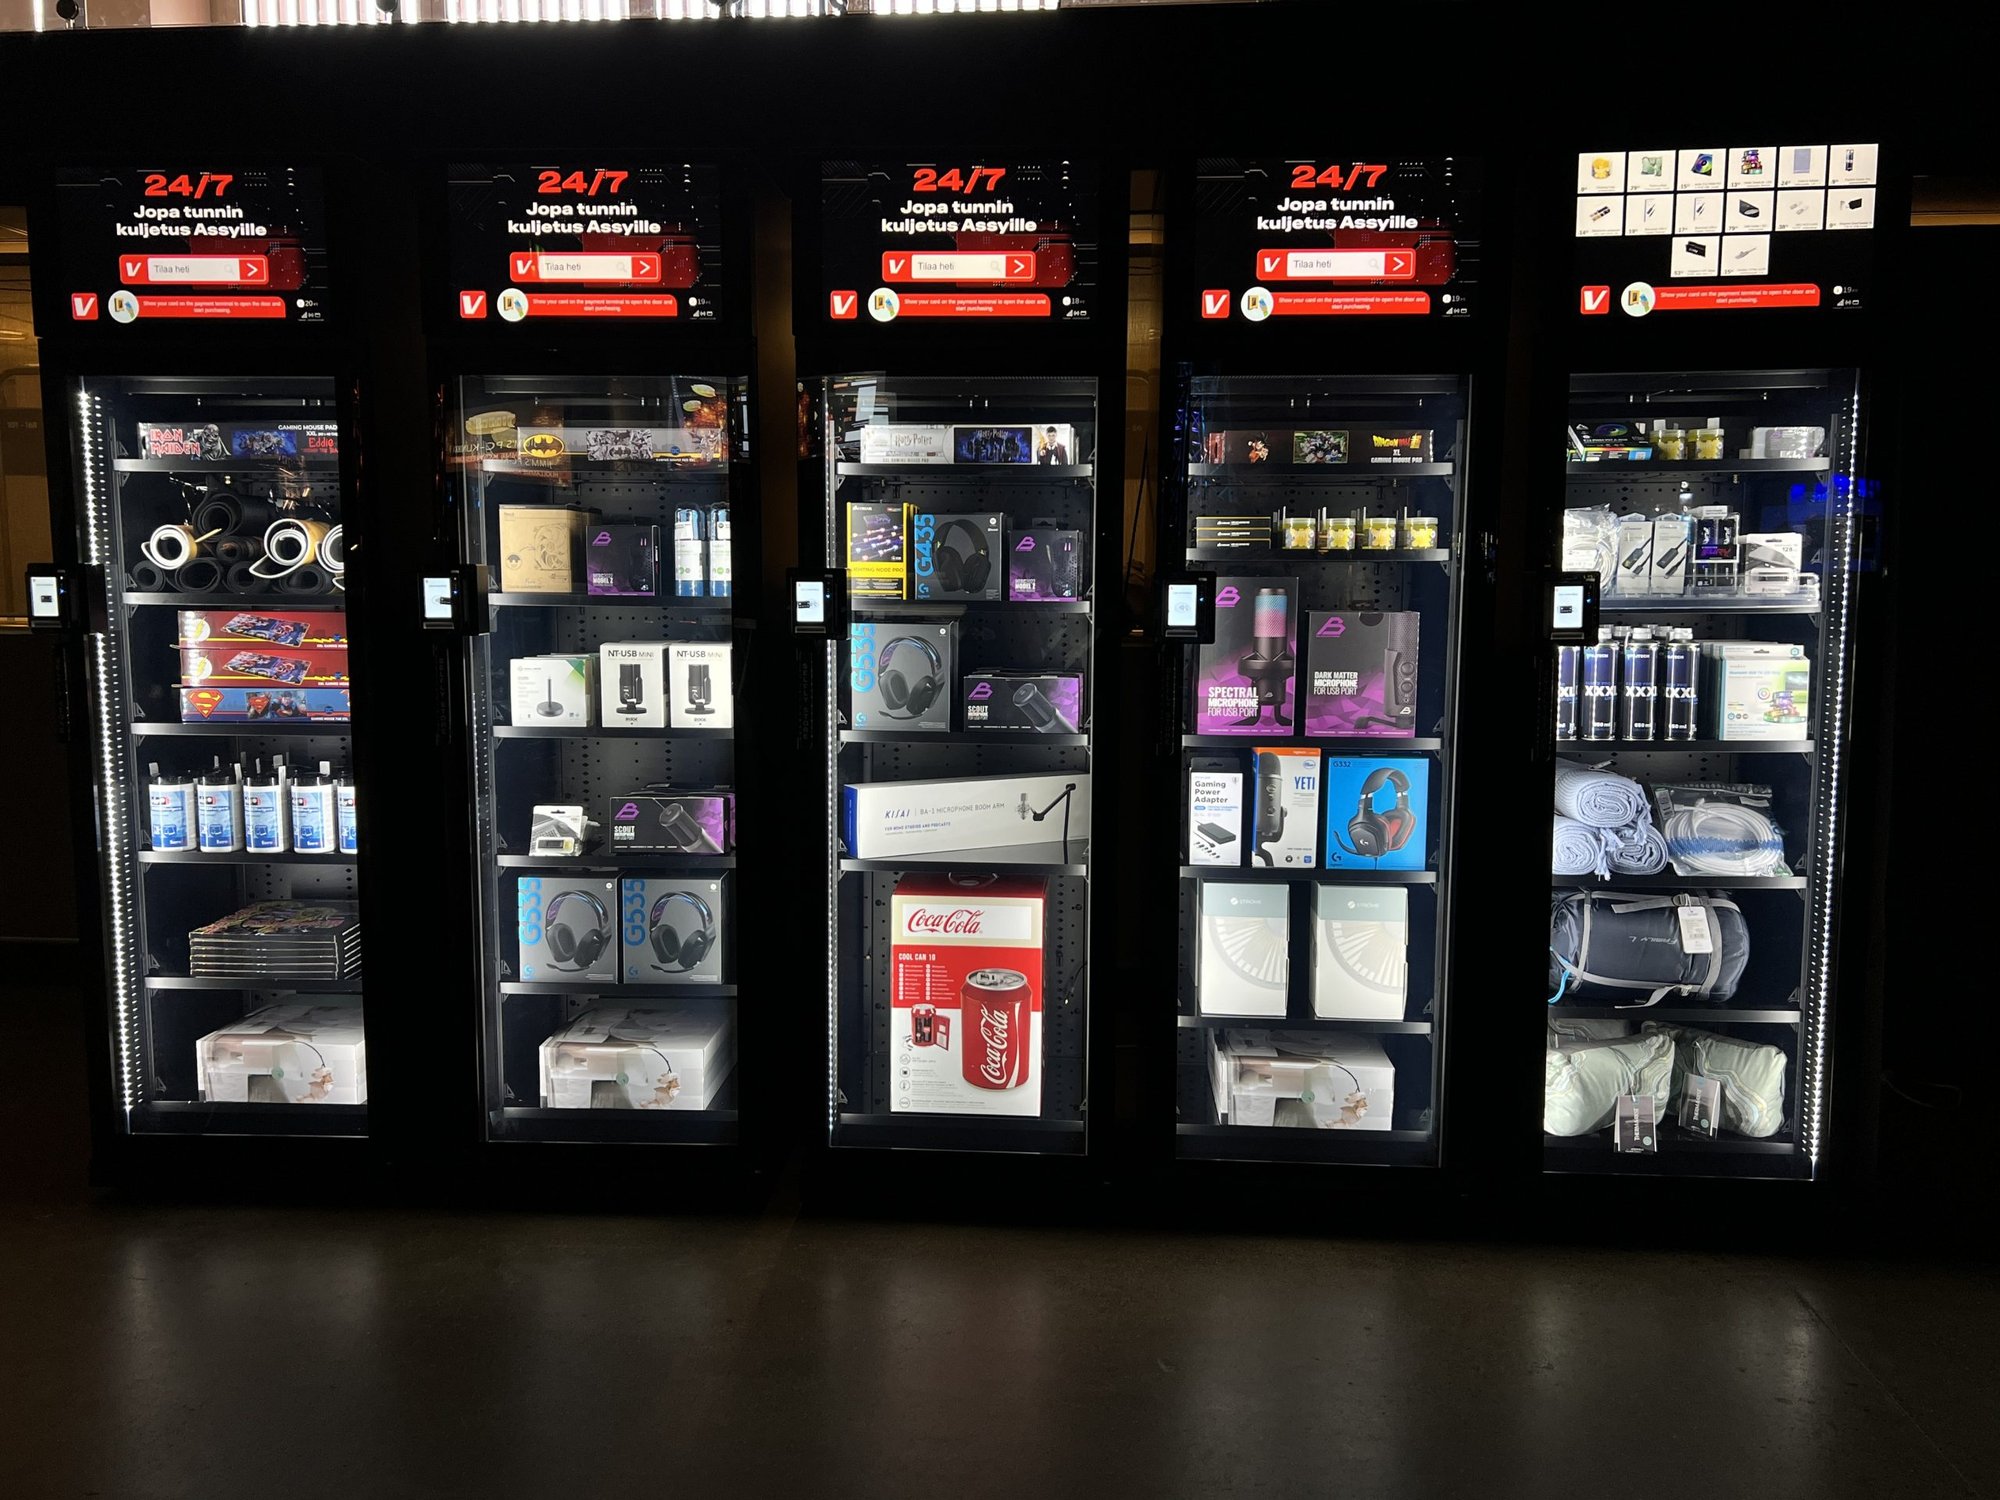 Verkkokauppa.com smart vending machines